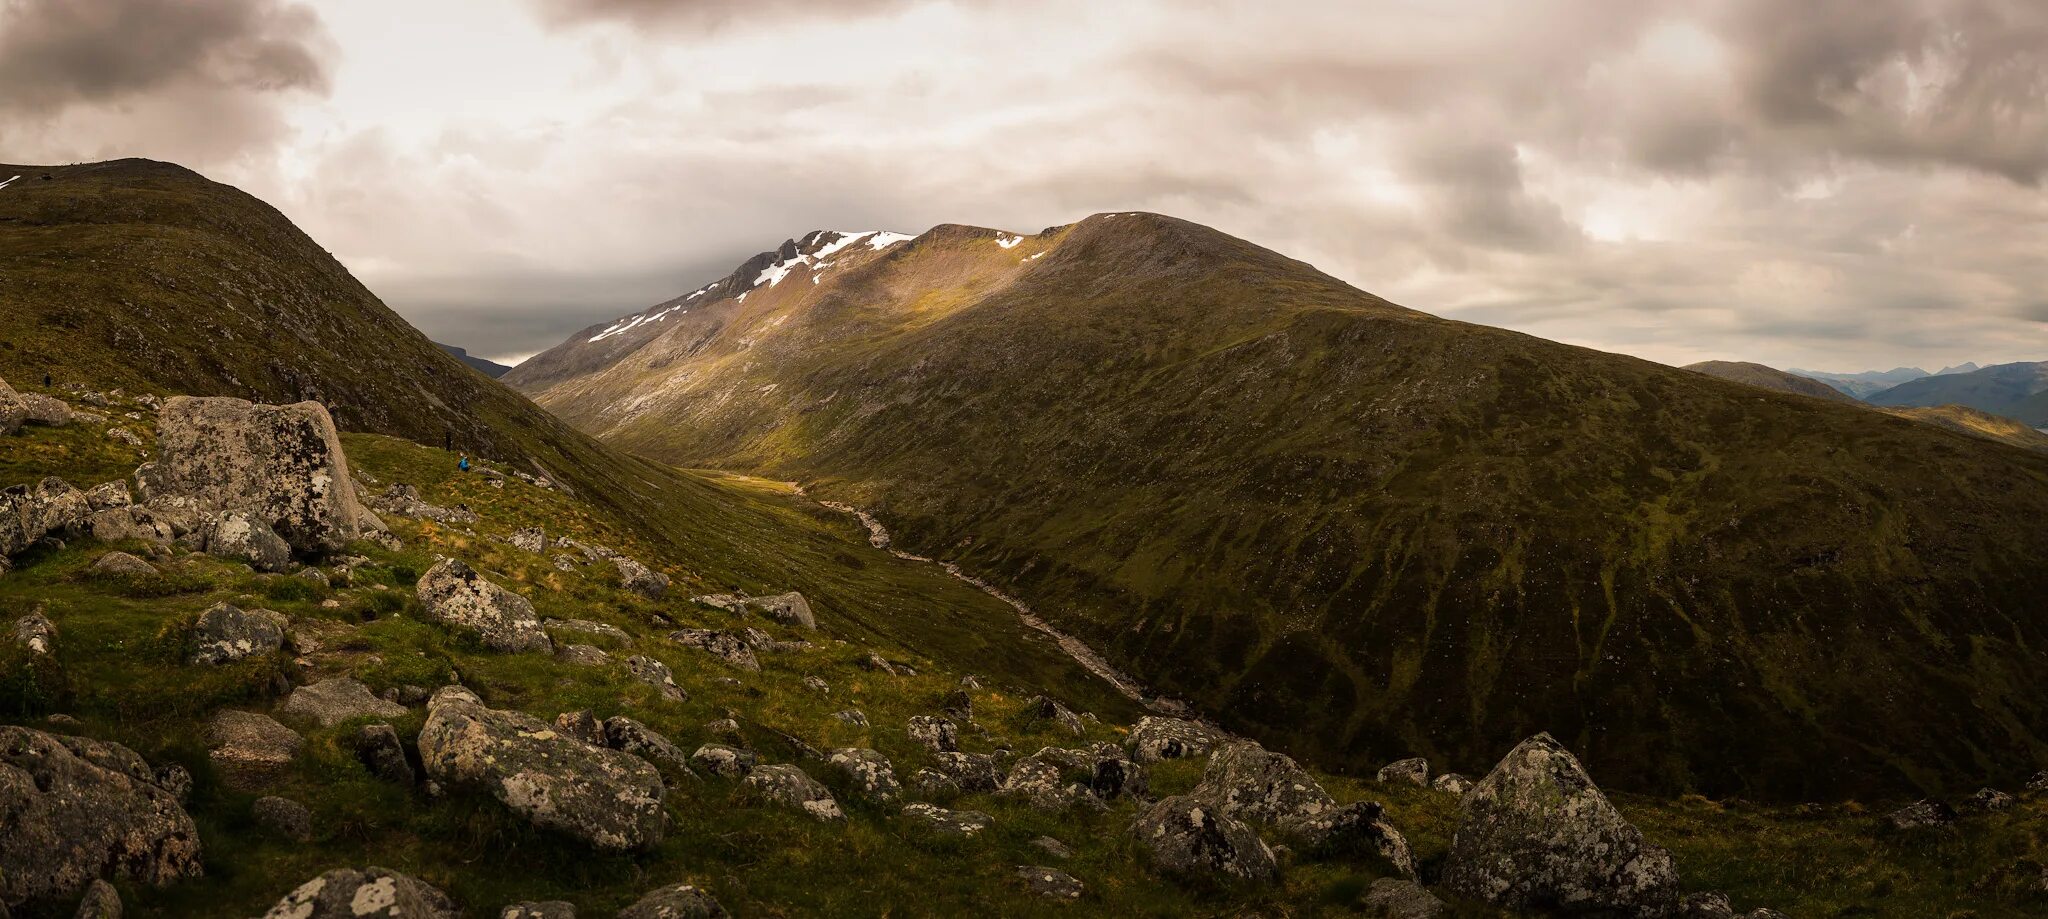 Гора Бен Невис в Шотландии. Бен-Невис грампианские горы. Самая высокая гора Великобритании Бен Невис. Грампианские горы Шотландия. Mountains of great britain